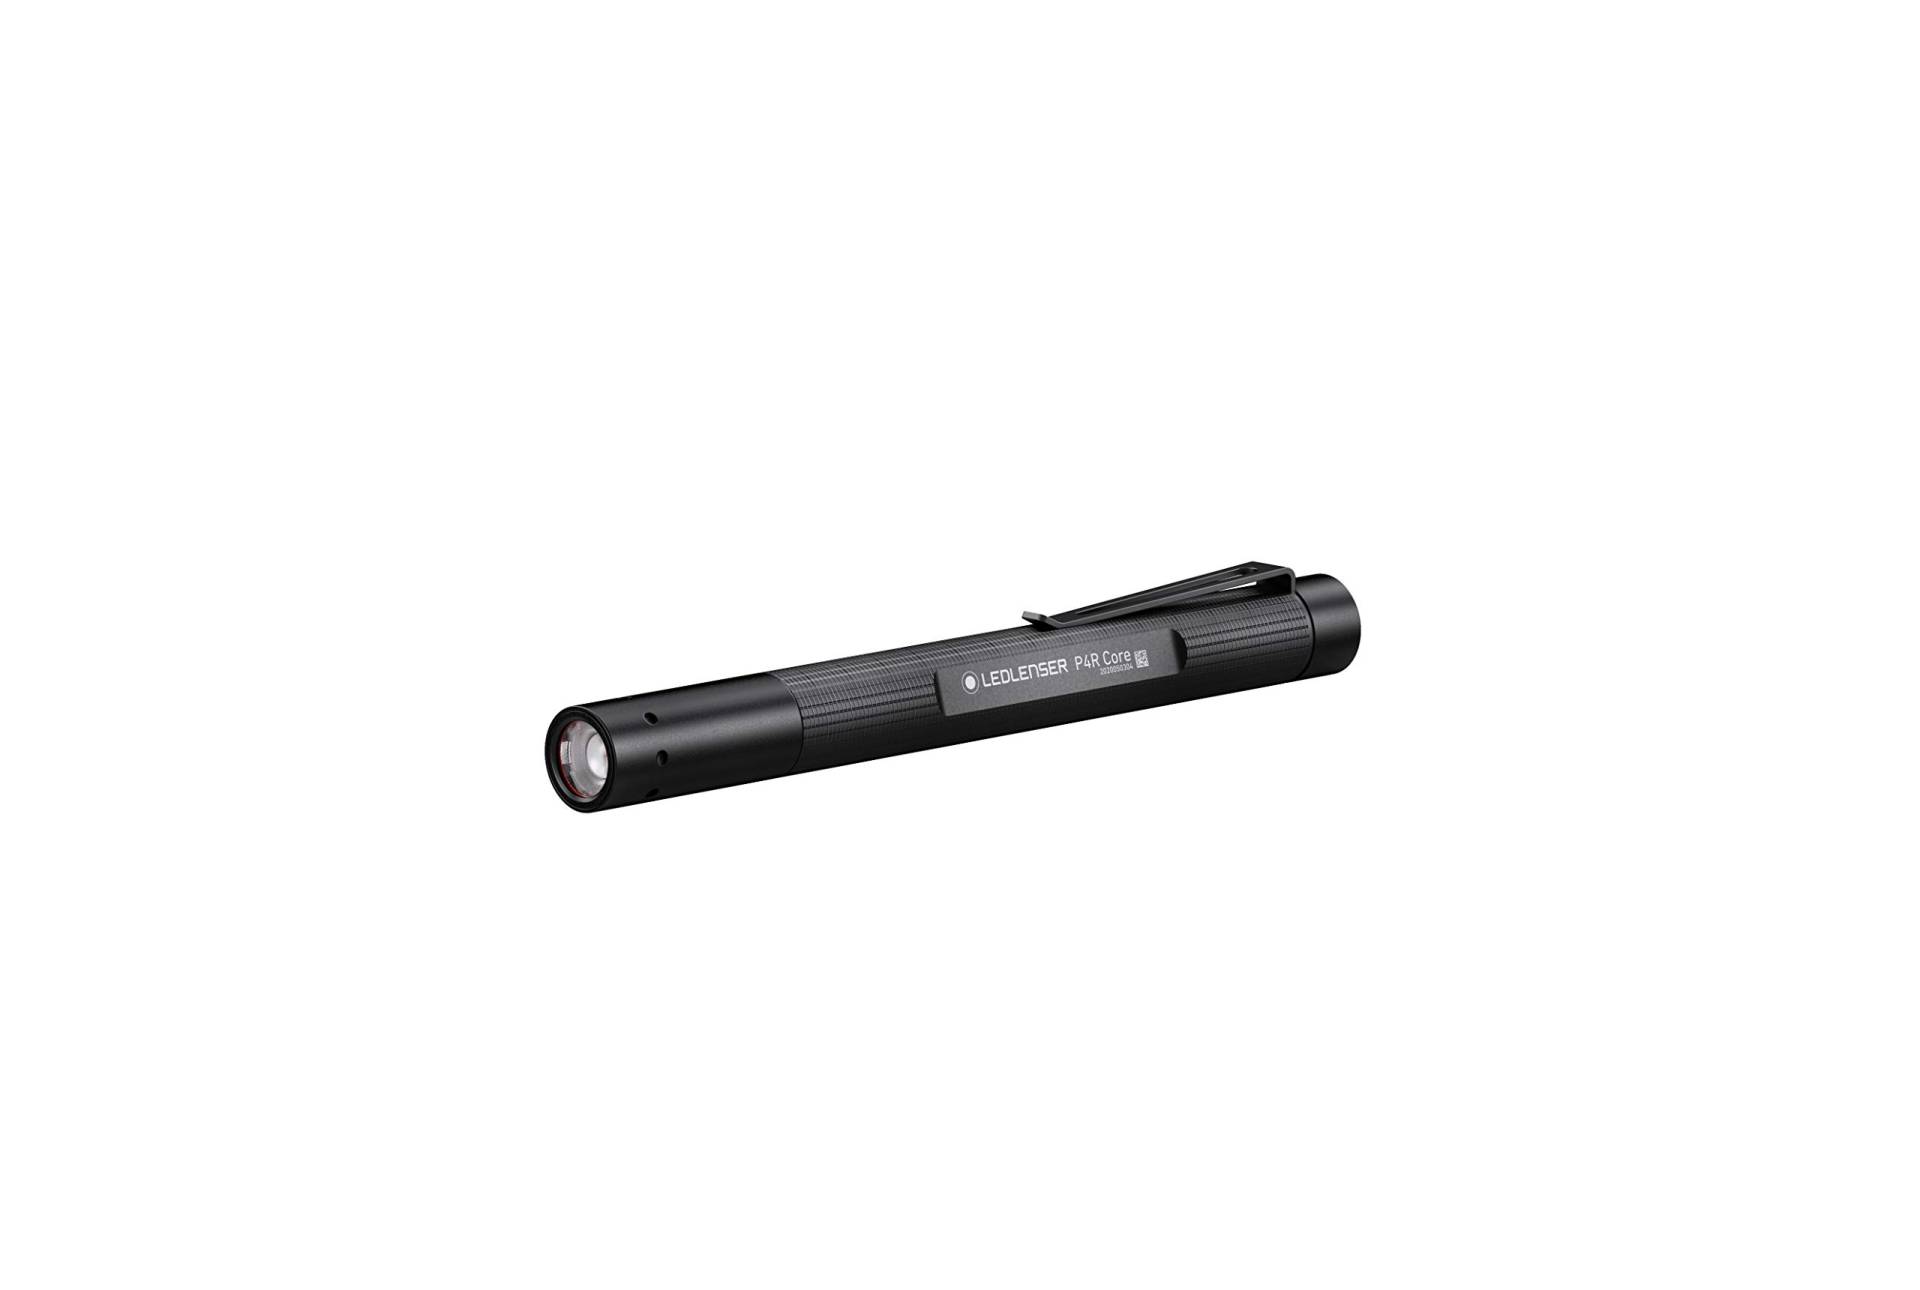 Ledlenser P4R Core LED Stiftleuchte, 200 Lumen, aufladbar mit Lithium Akku, fokussierbar, drei Helligkeitsstufen, Leuchtweite 95m, USB Ladekabel u. Clip, Penlight von Ledlenser